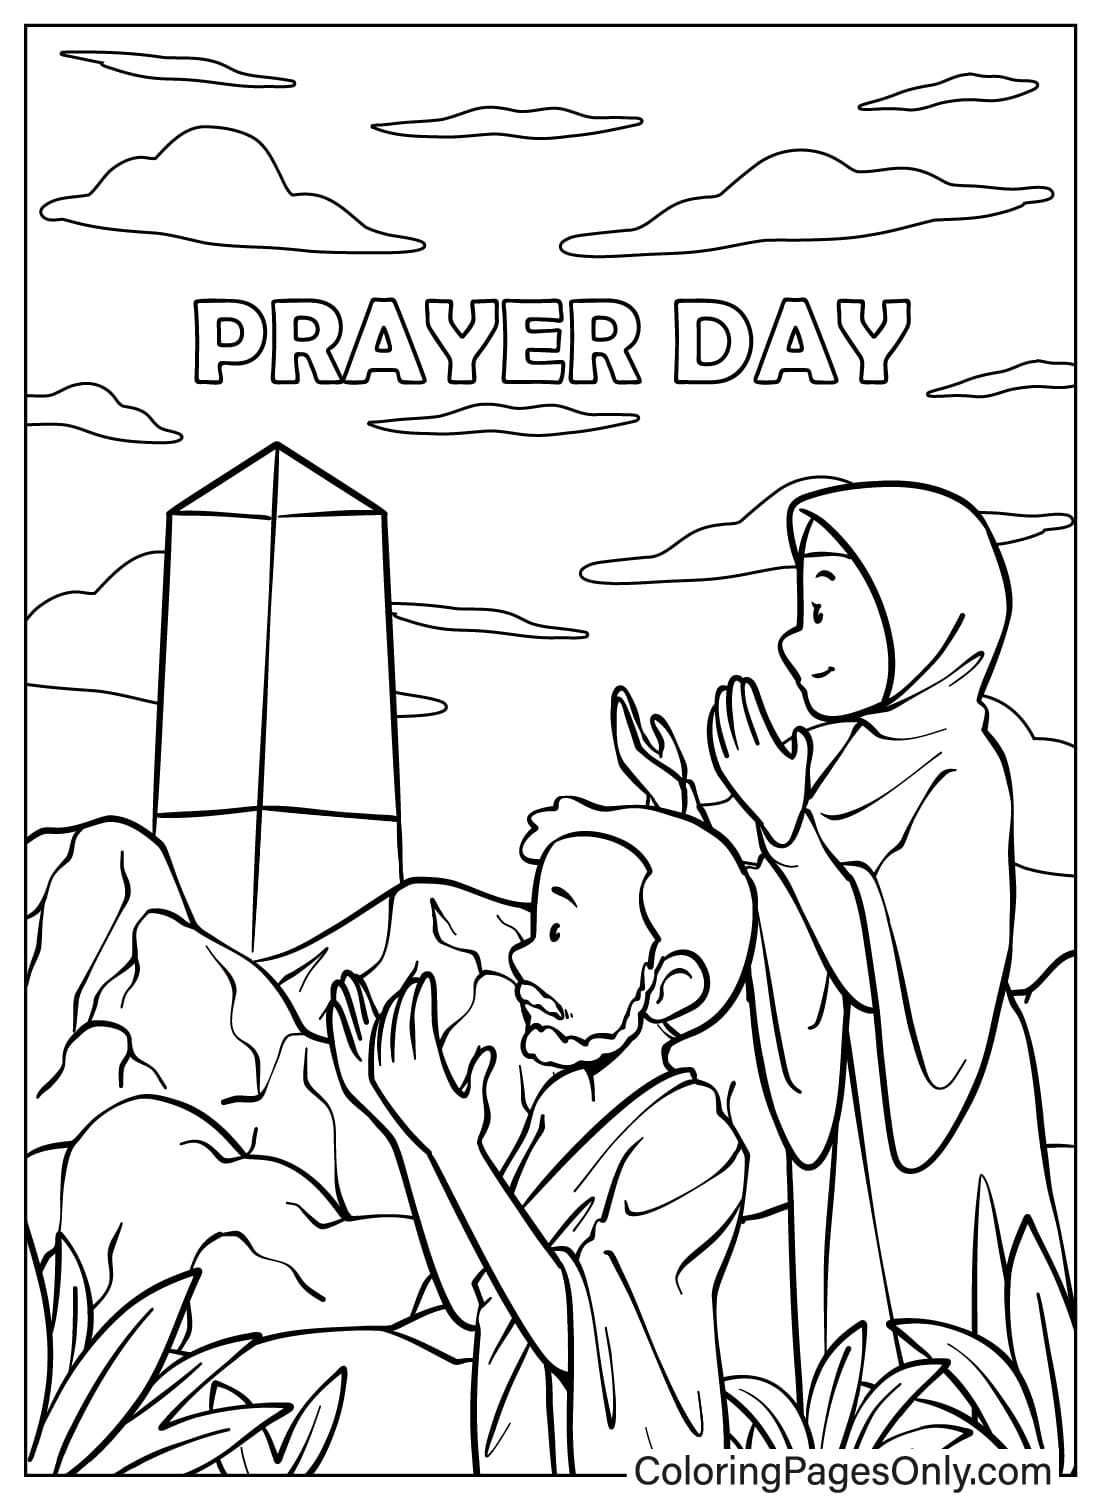 Man en vrouw bidden vanaf gebedsdag